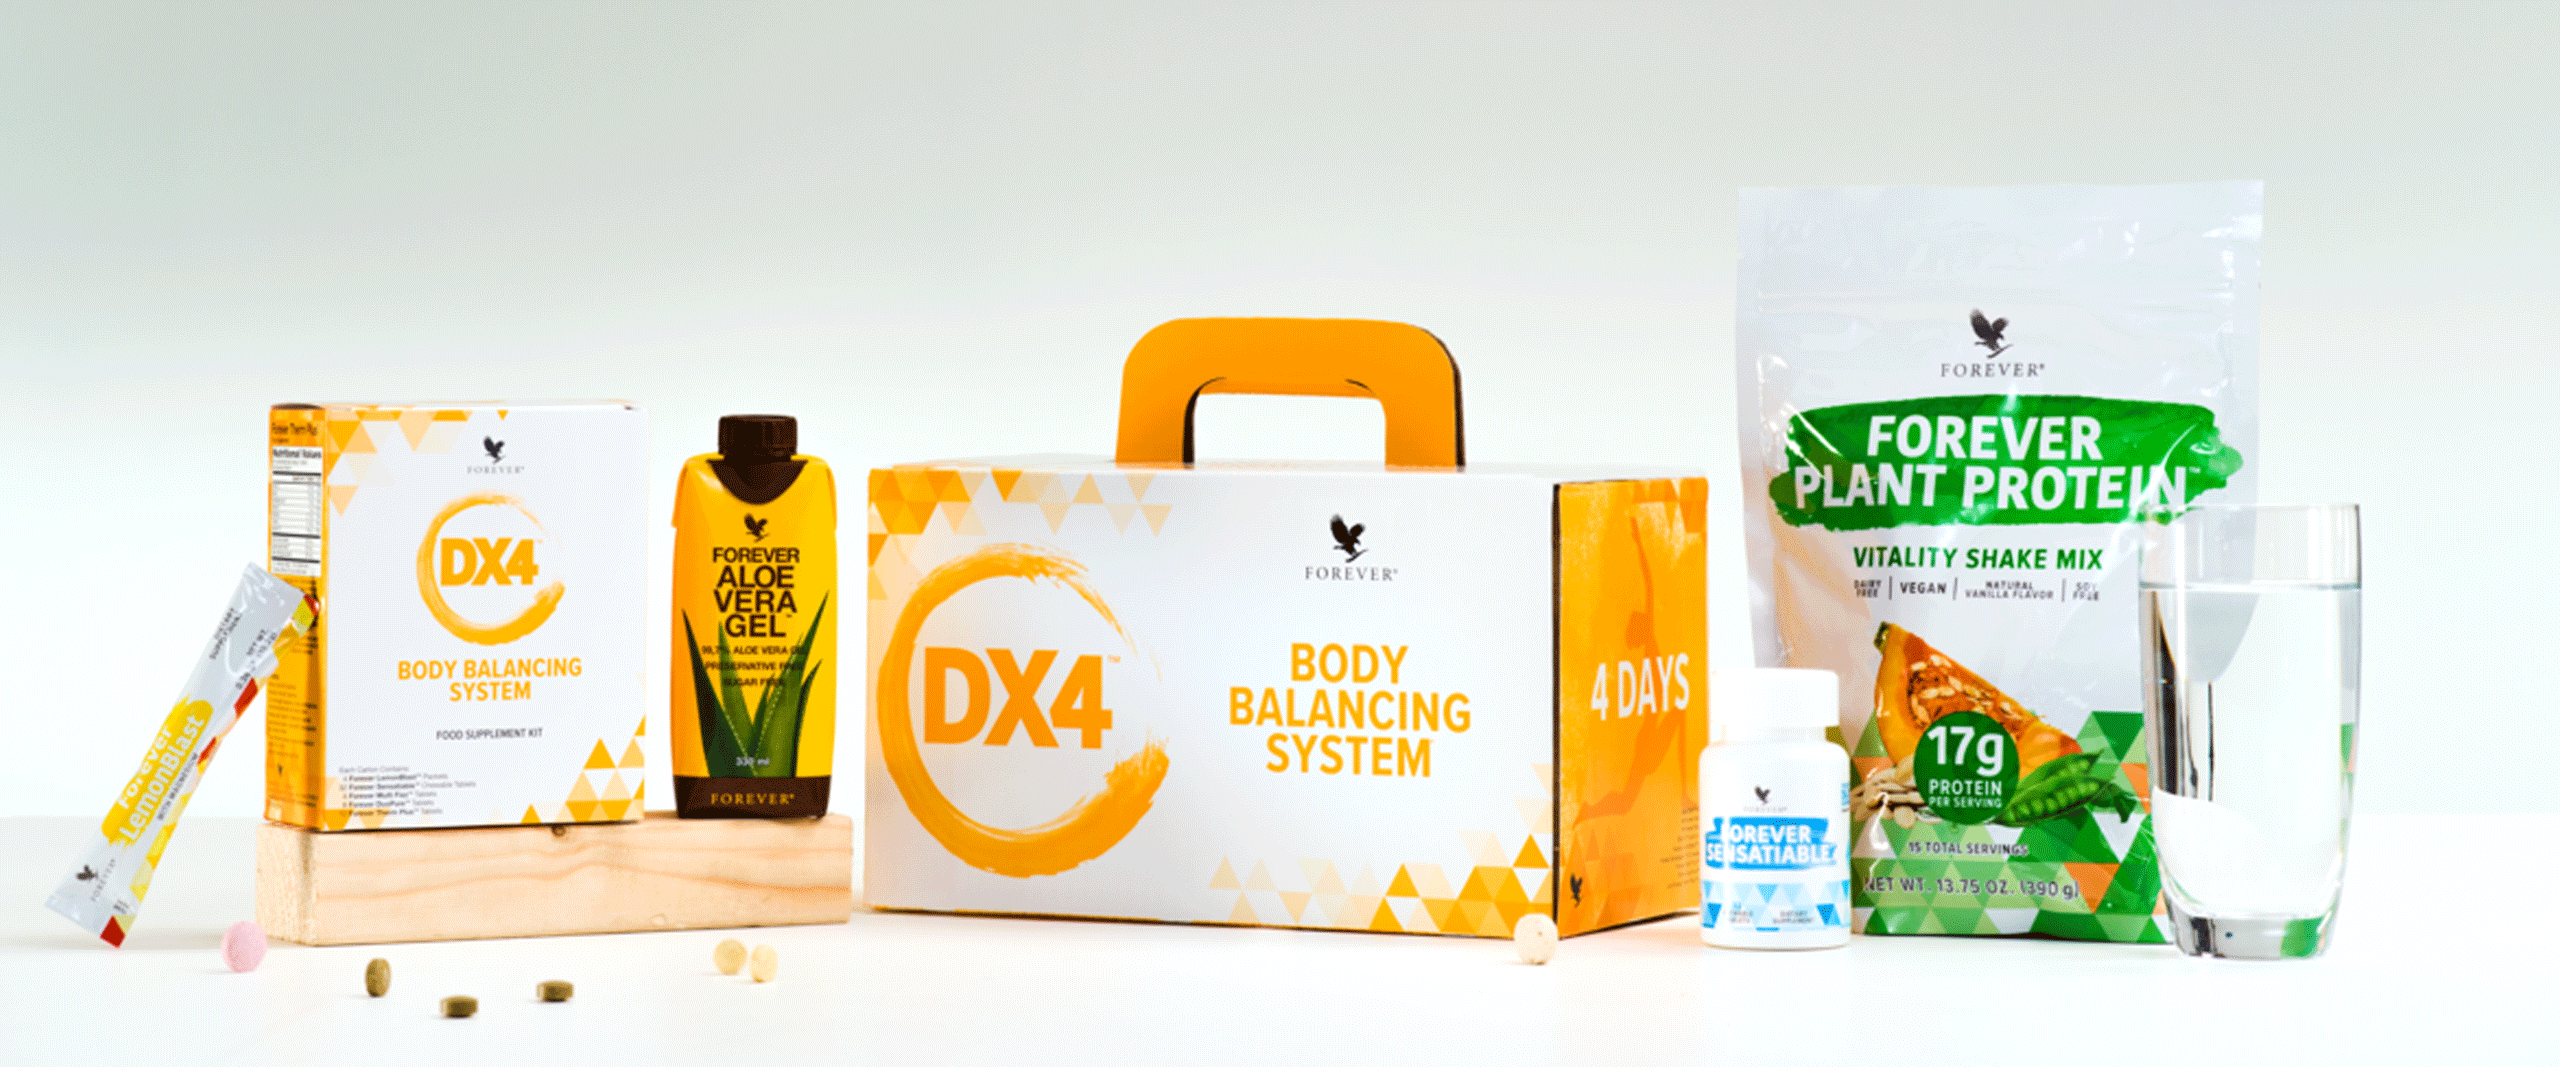 DX4 – Dein Startschuss für Gesundheit und Bewusstsein!